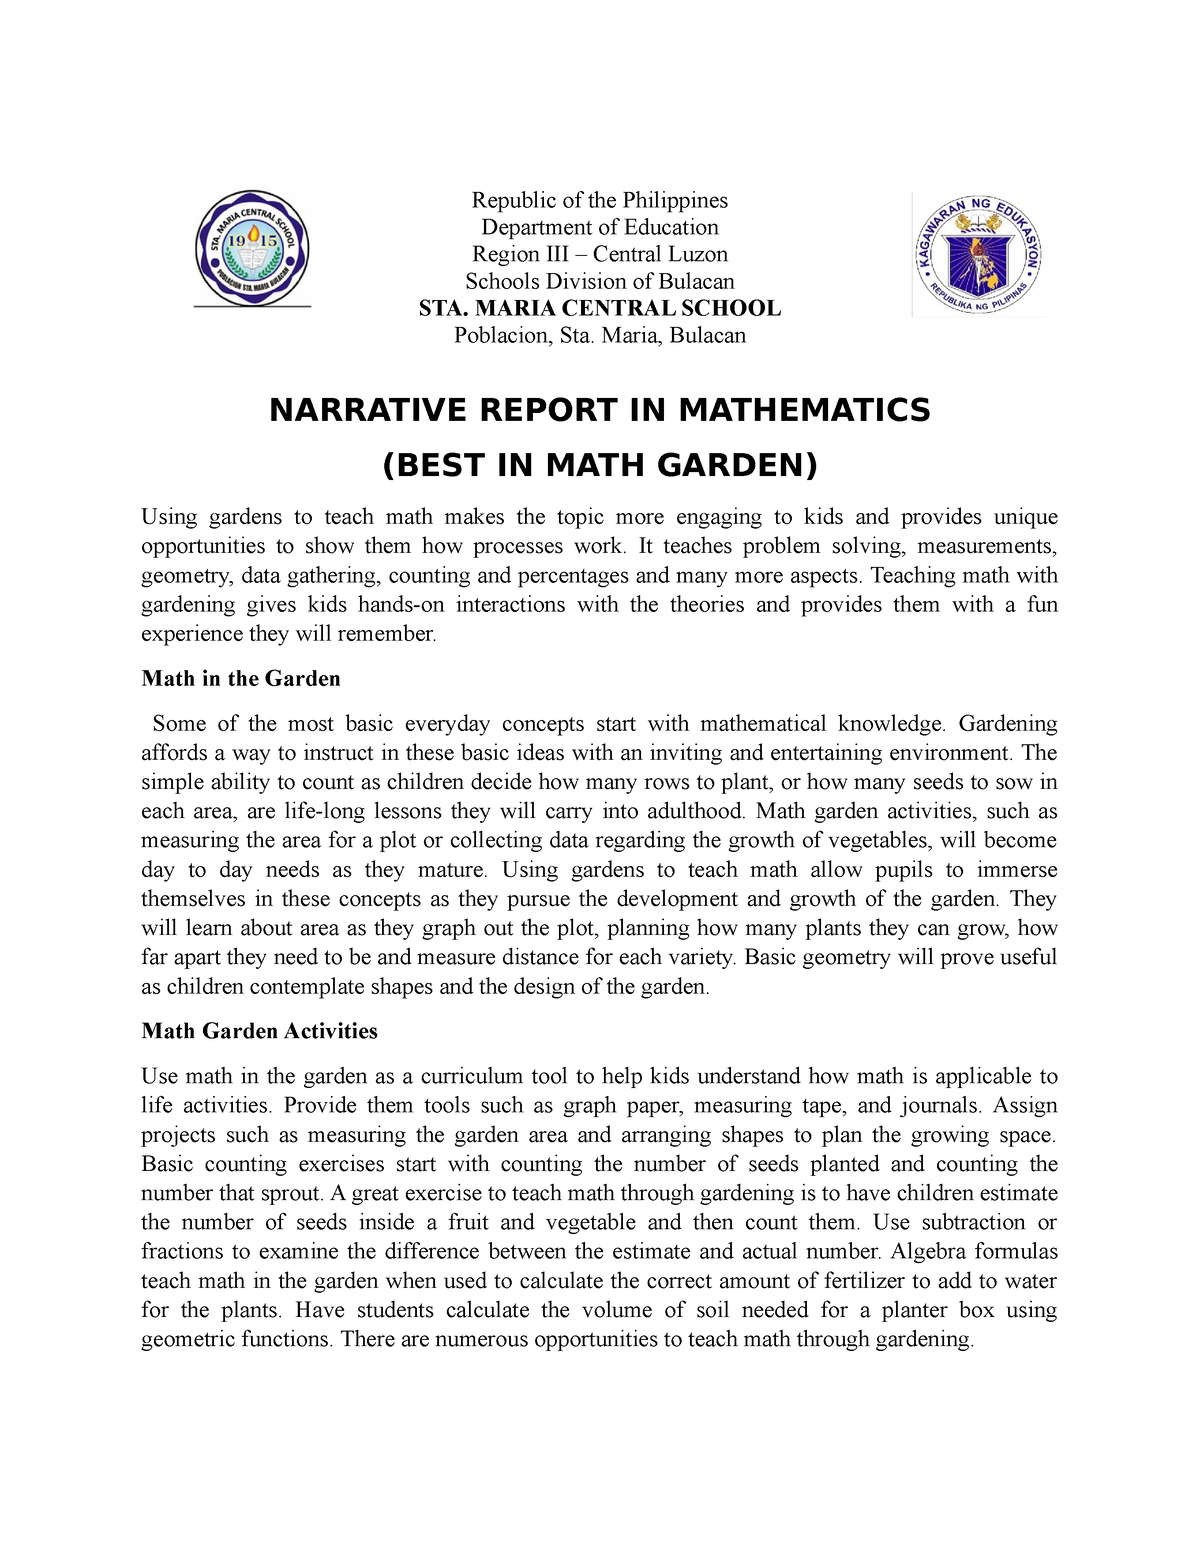 narrative report and narrative essay